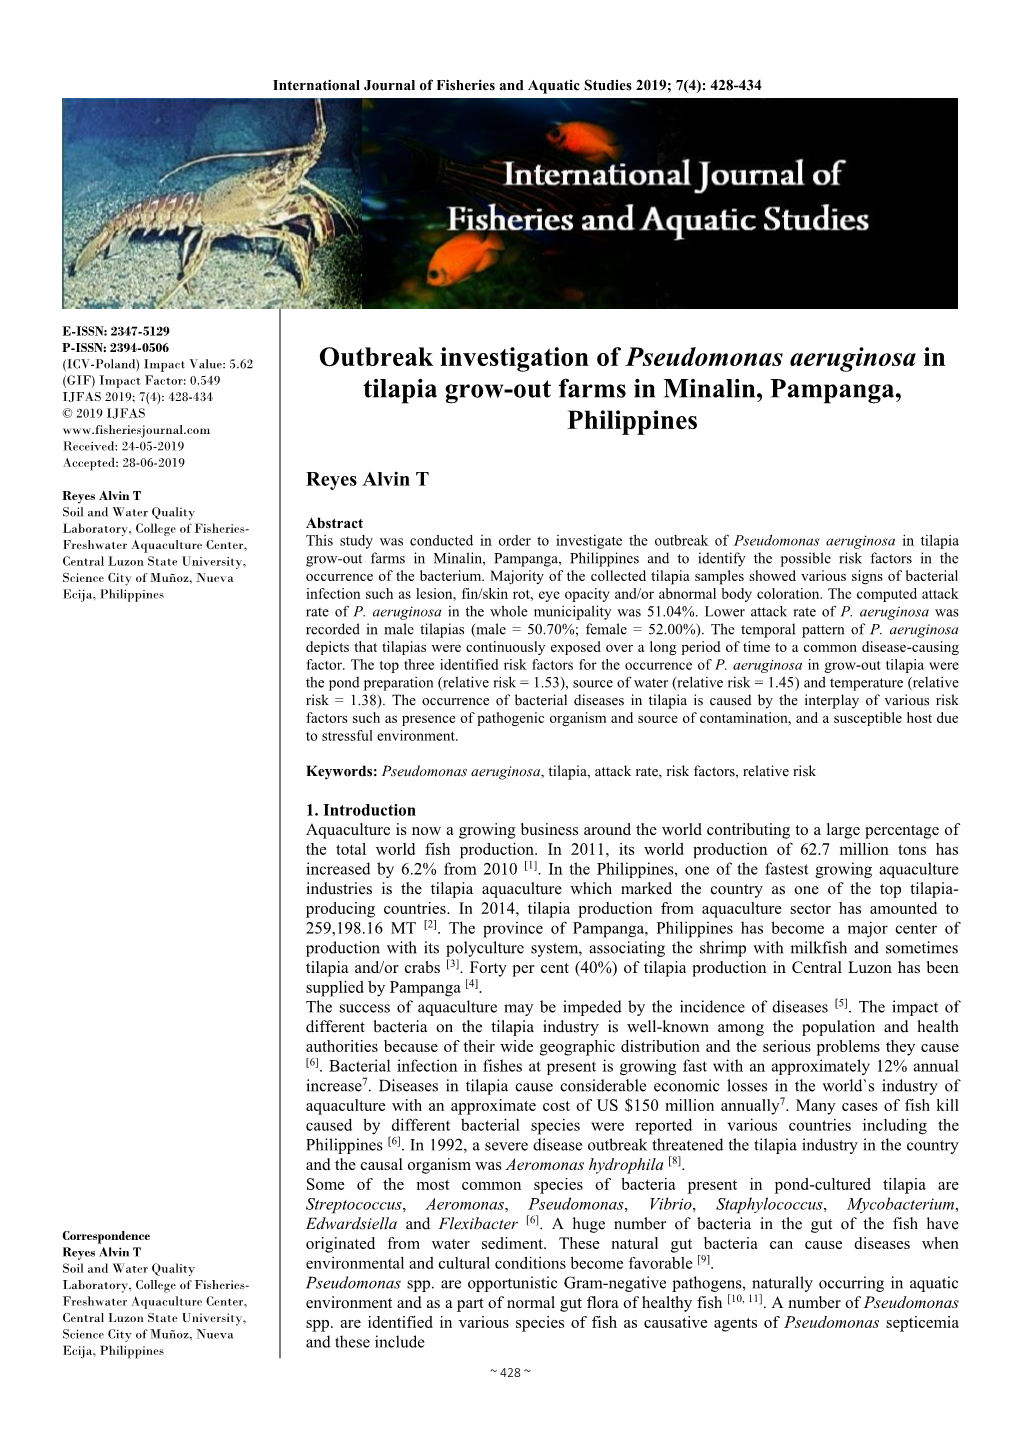 Outbreak Investigation of Pseudomonas Aeruginosa in Tilapia